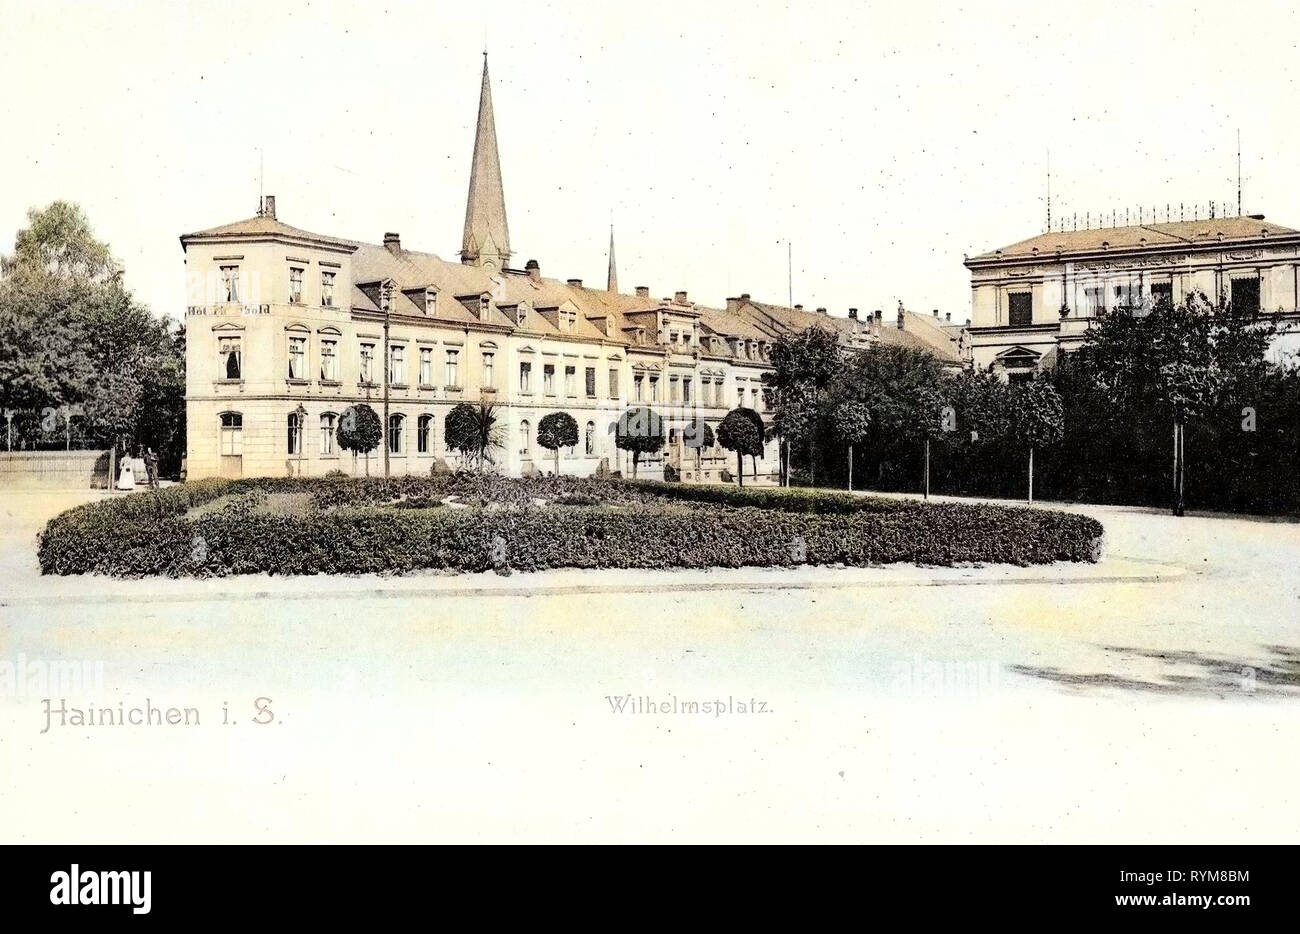 Hôtels en Saxe, Hainichen, 1903, Landkreis Mittelsachsen, Wilhelmsplatz, Allemagne Banque D'Images